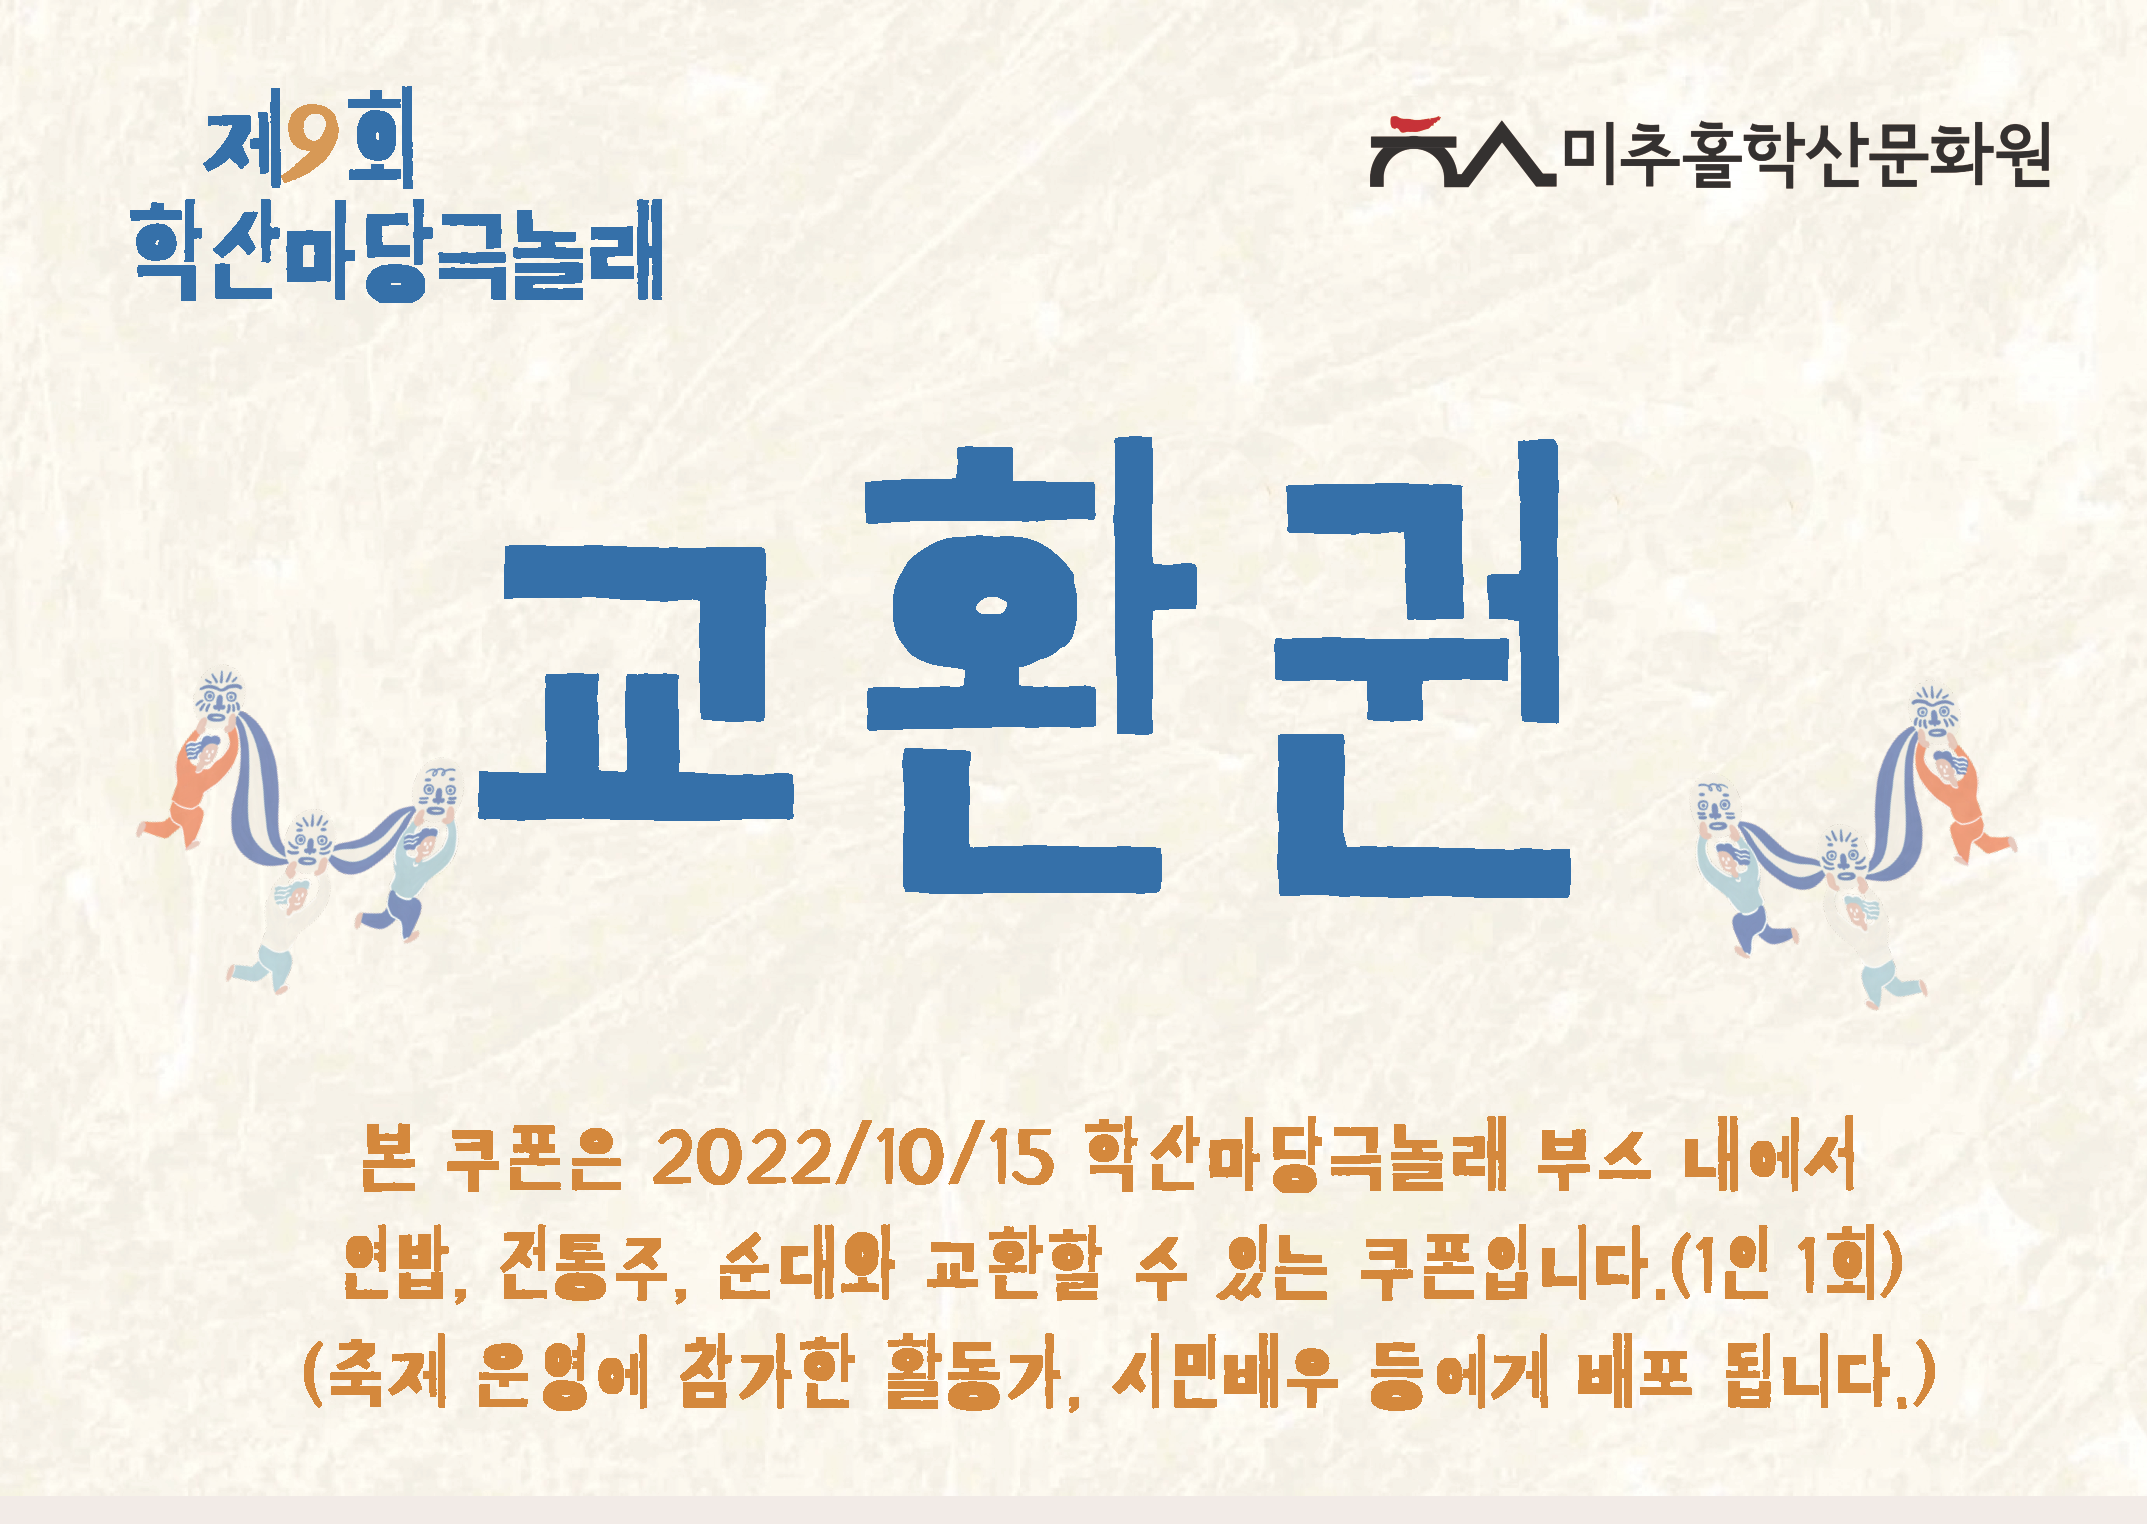 2022-학산마당극-놀래-온라인-서포터즈-놀랩_복사본 - 복사본 (9).png